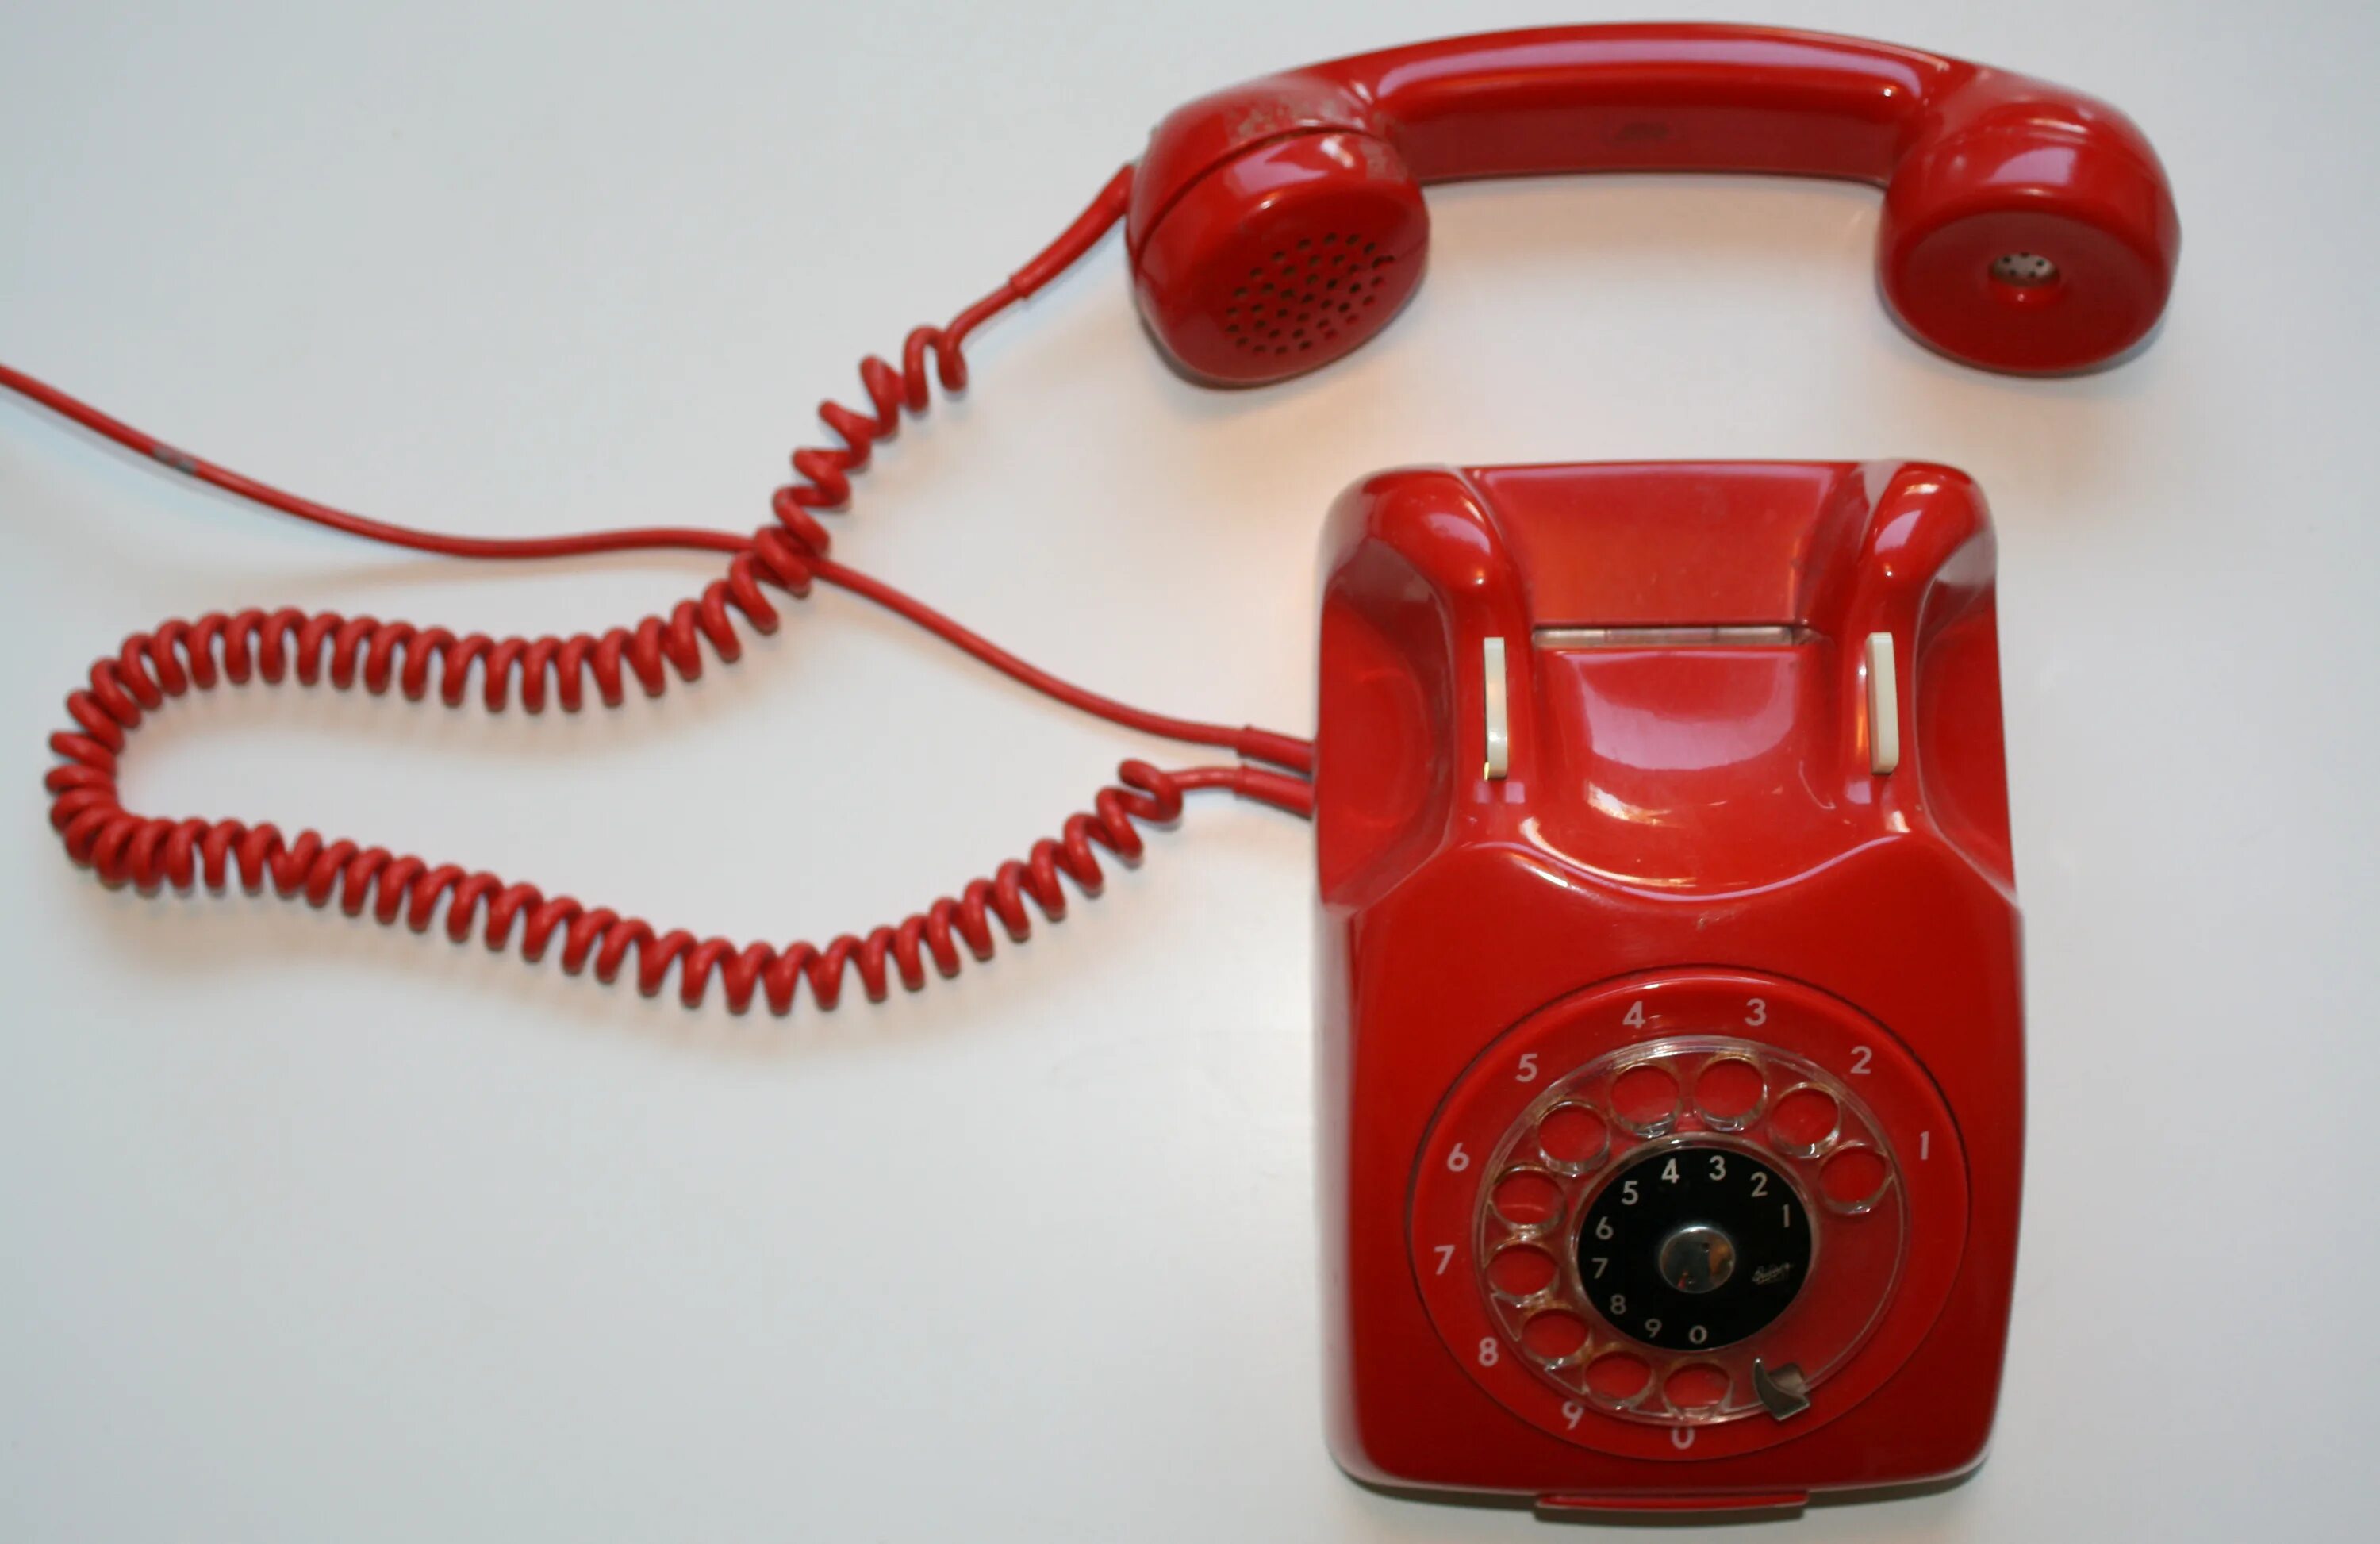 Красный телефон что значит. Красный телефон. Красный телефон современный. Телефон Alcatel красный старый. Красная телефонная трубка ретро.